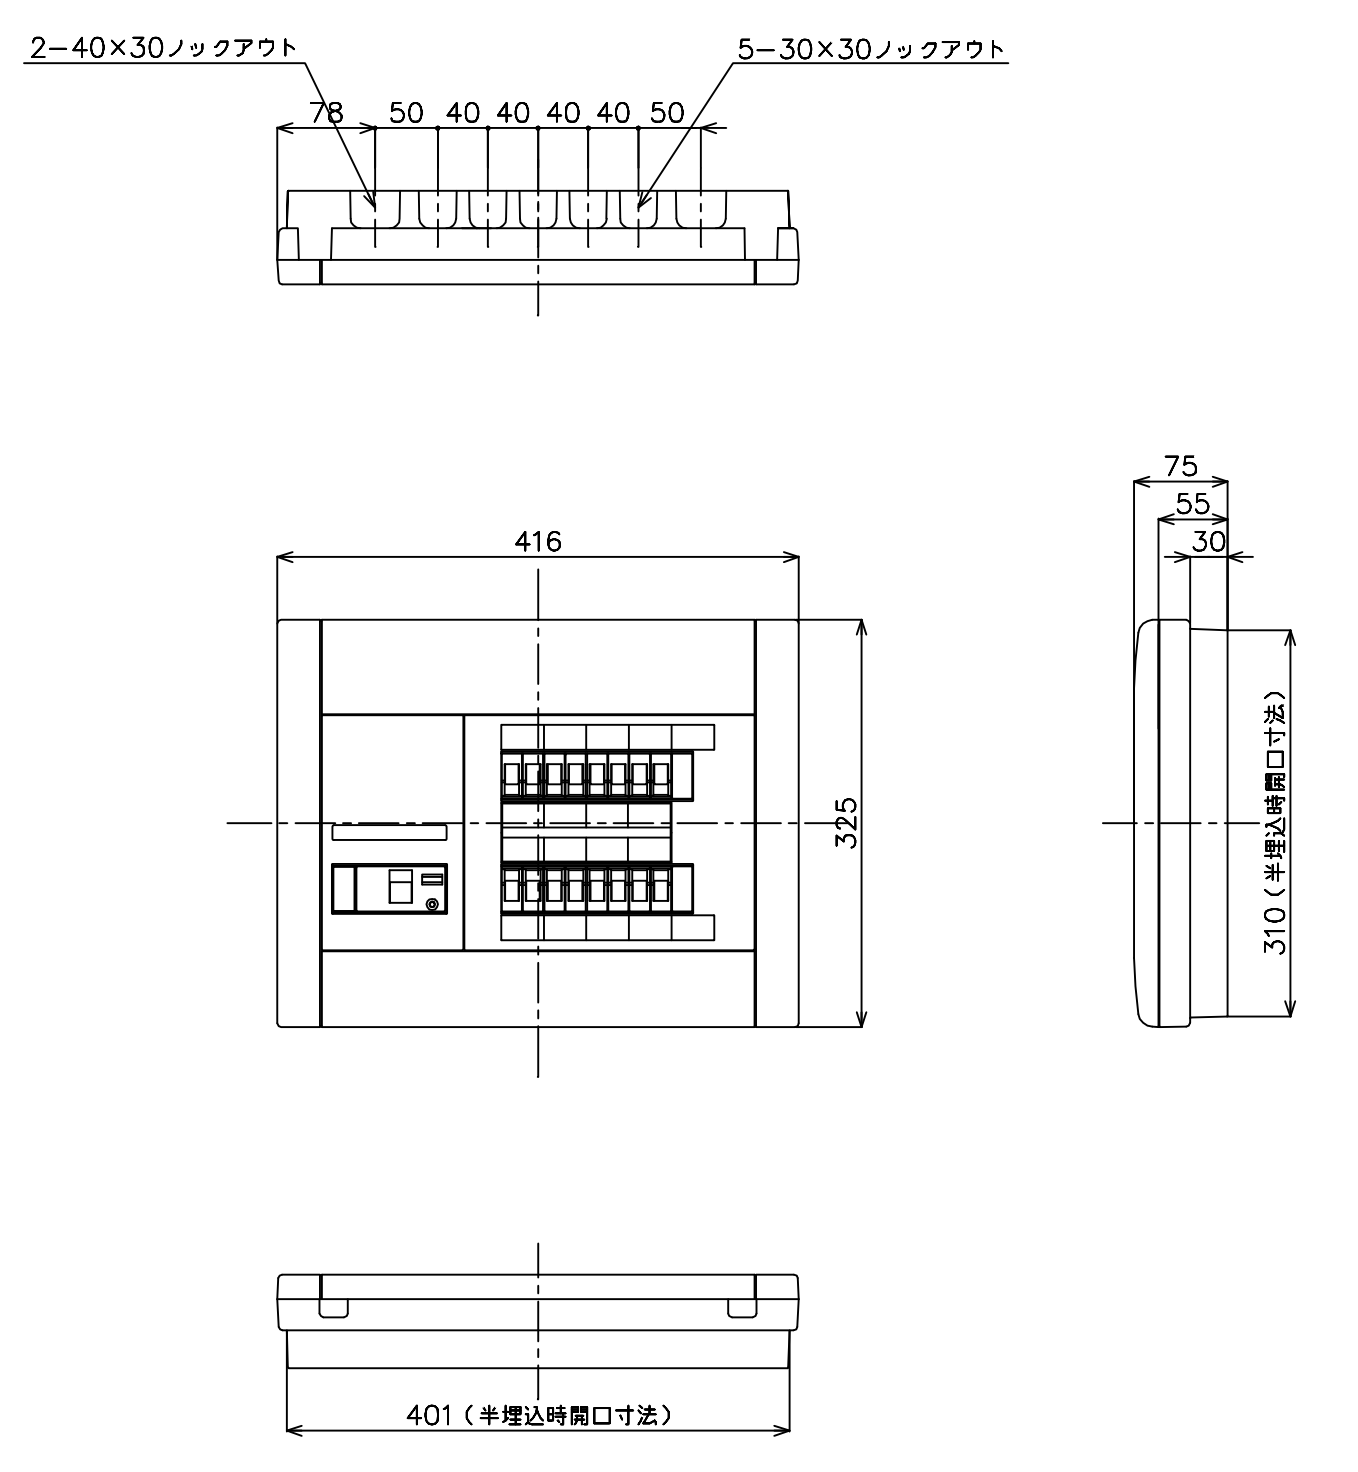 電気配線材料 BQR8382 パナソニック コスモパネルコンパクト21 分電盤 標準タイプ リミッタースペースなし 30A - 2